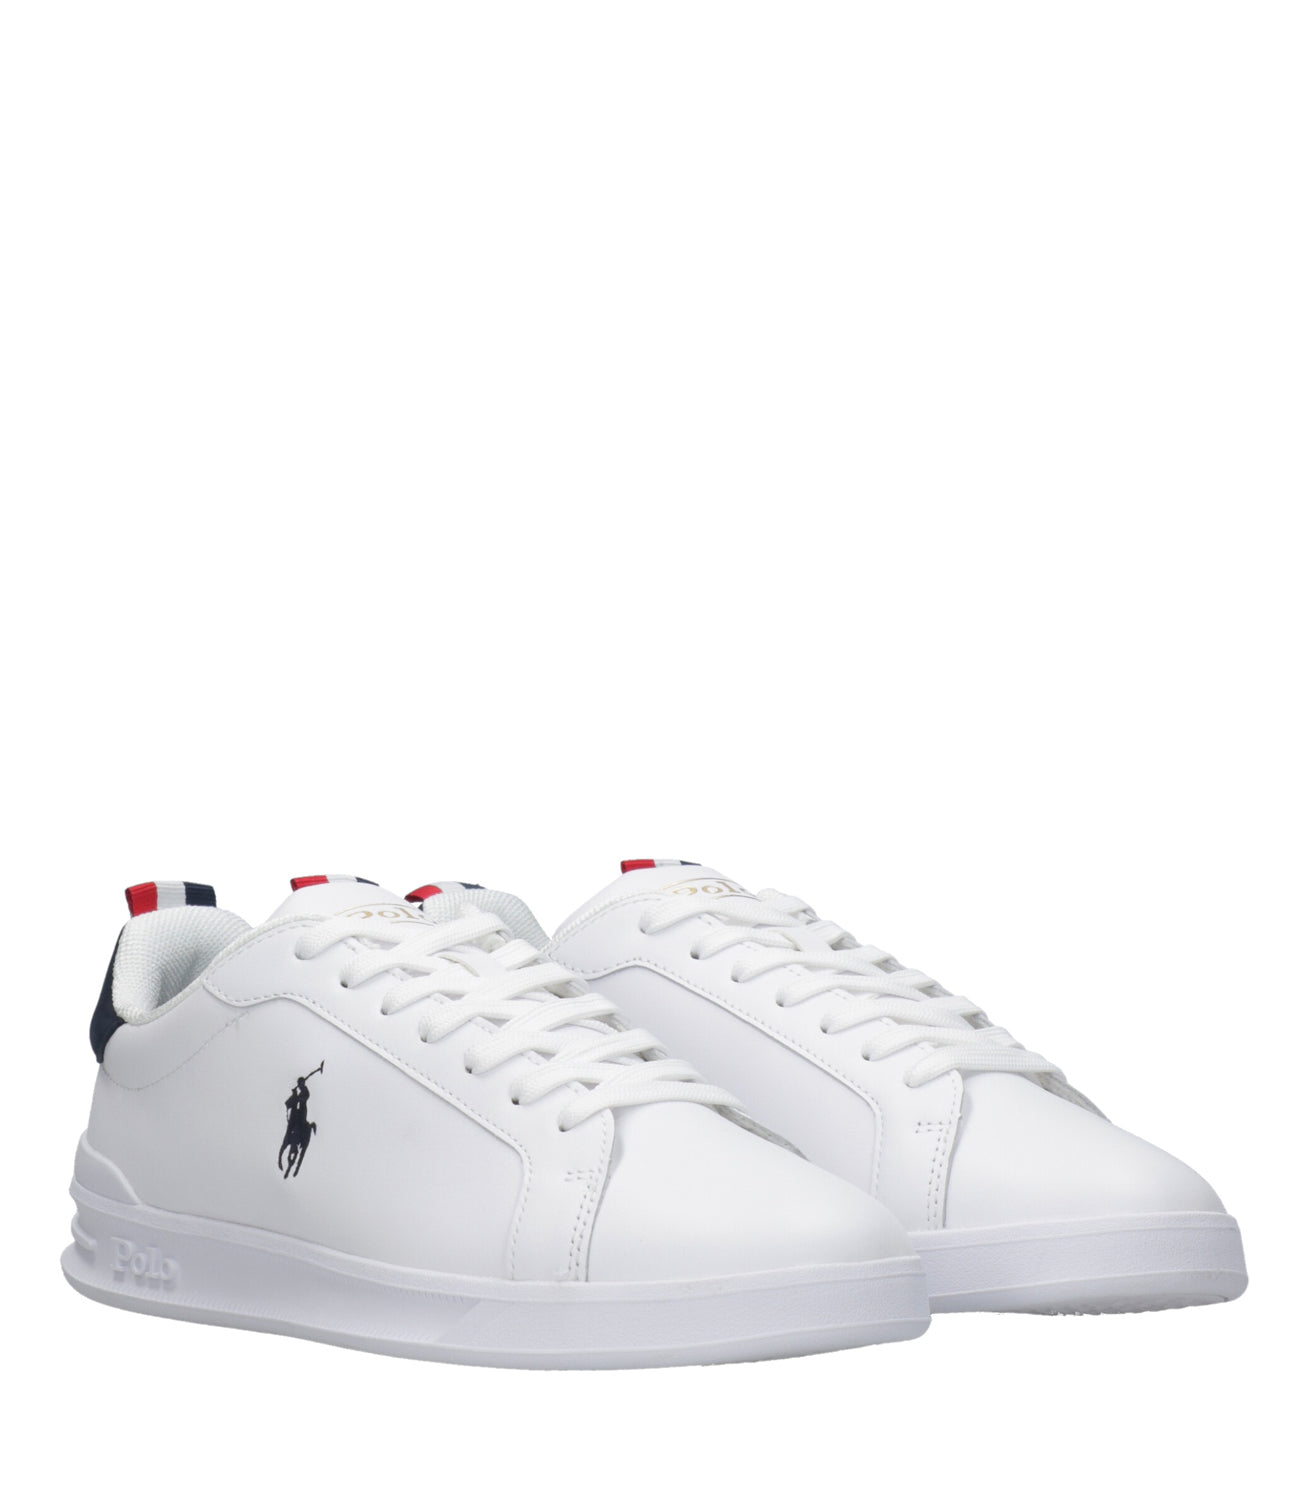 Polo Ralph Lauren | Sneaker Heritage Court II Bianca e Blu Navy